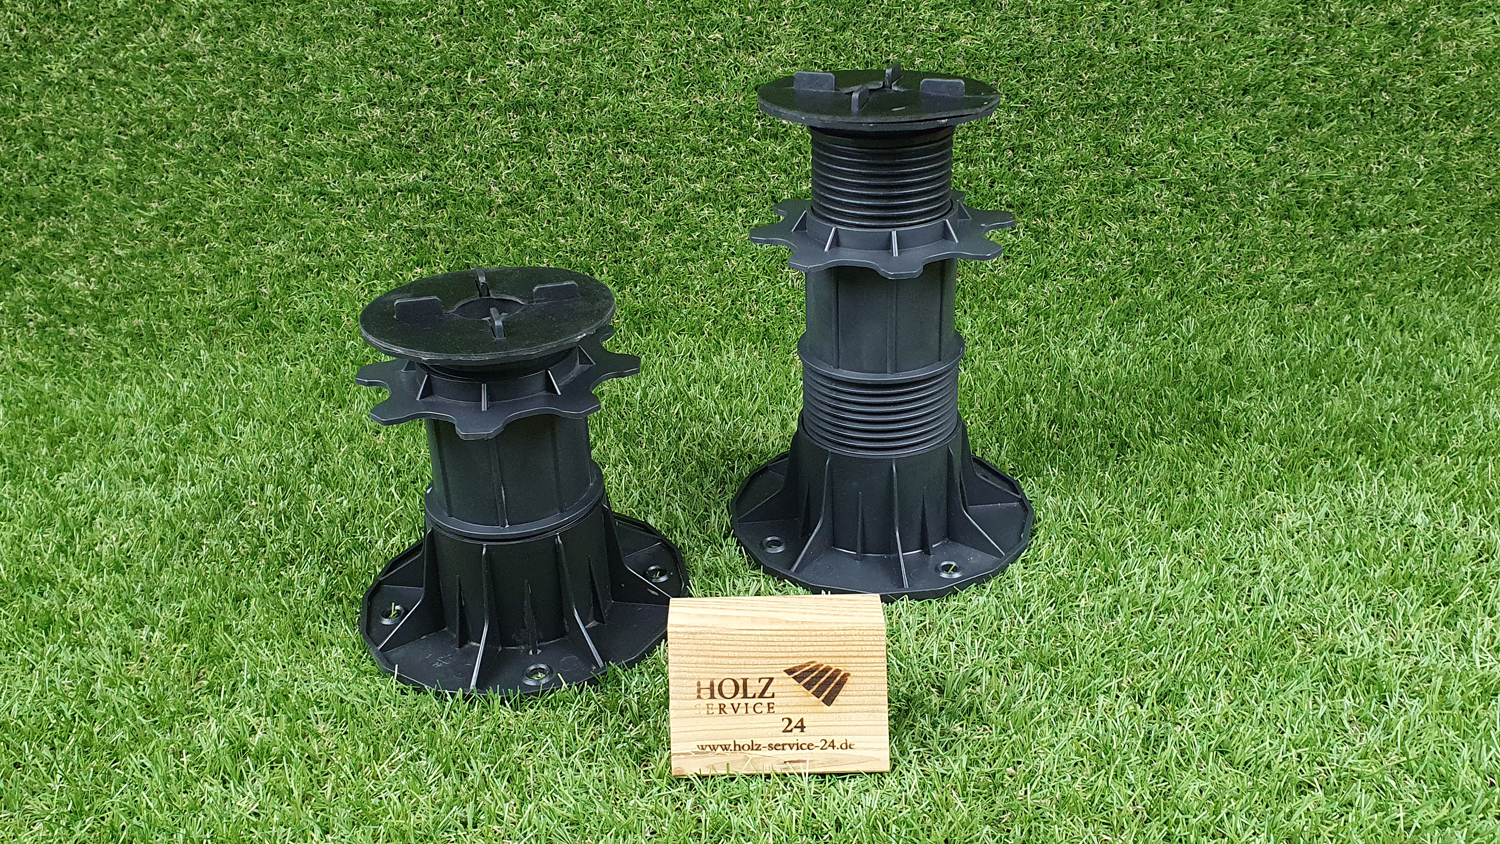 SALE Stelzlager für Terrassenplatten, H 155-230 mm, Fugenkreuz 3mm, schwarz, flexibler Kopf 